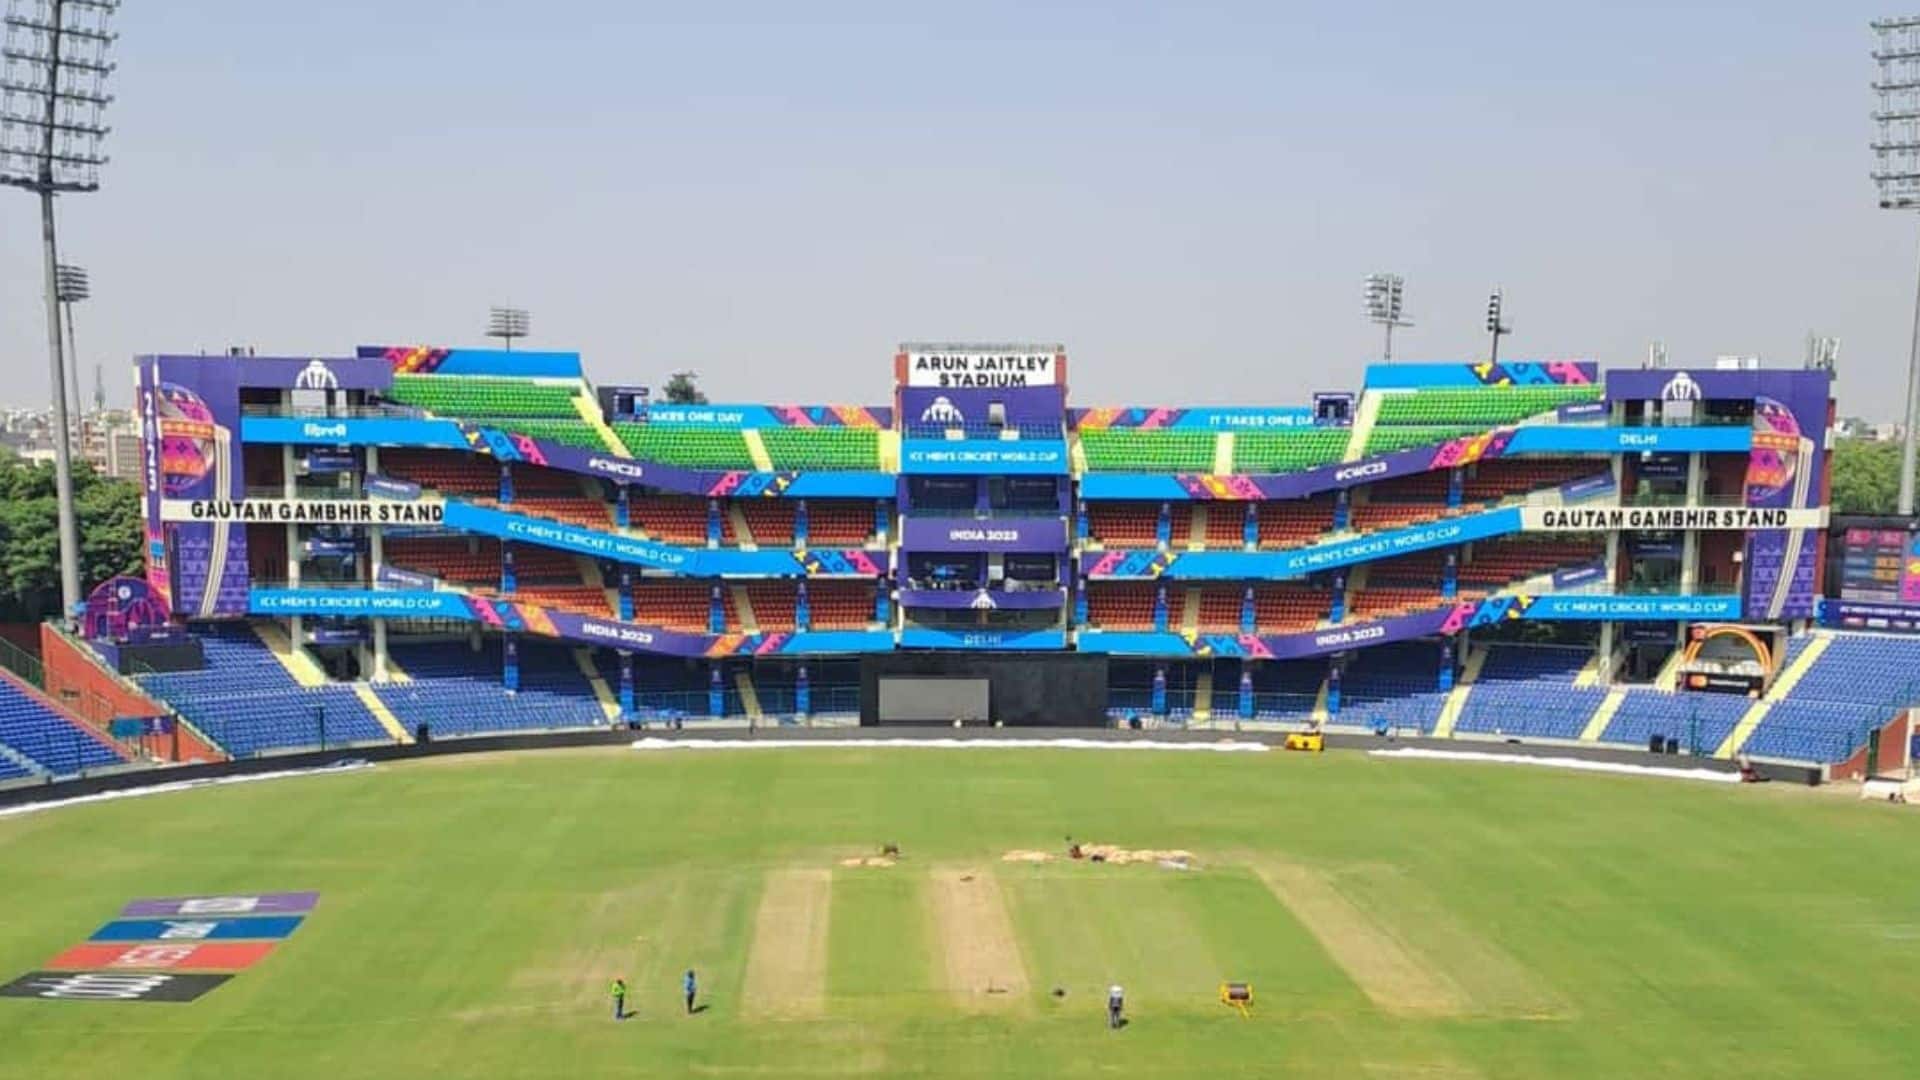 Arun Jaitley Stadium, Delhi [X.com]